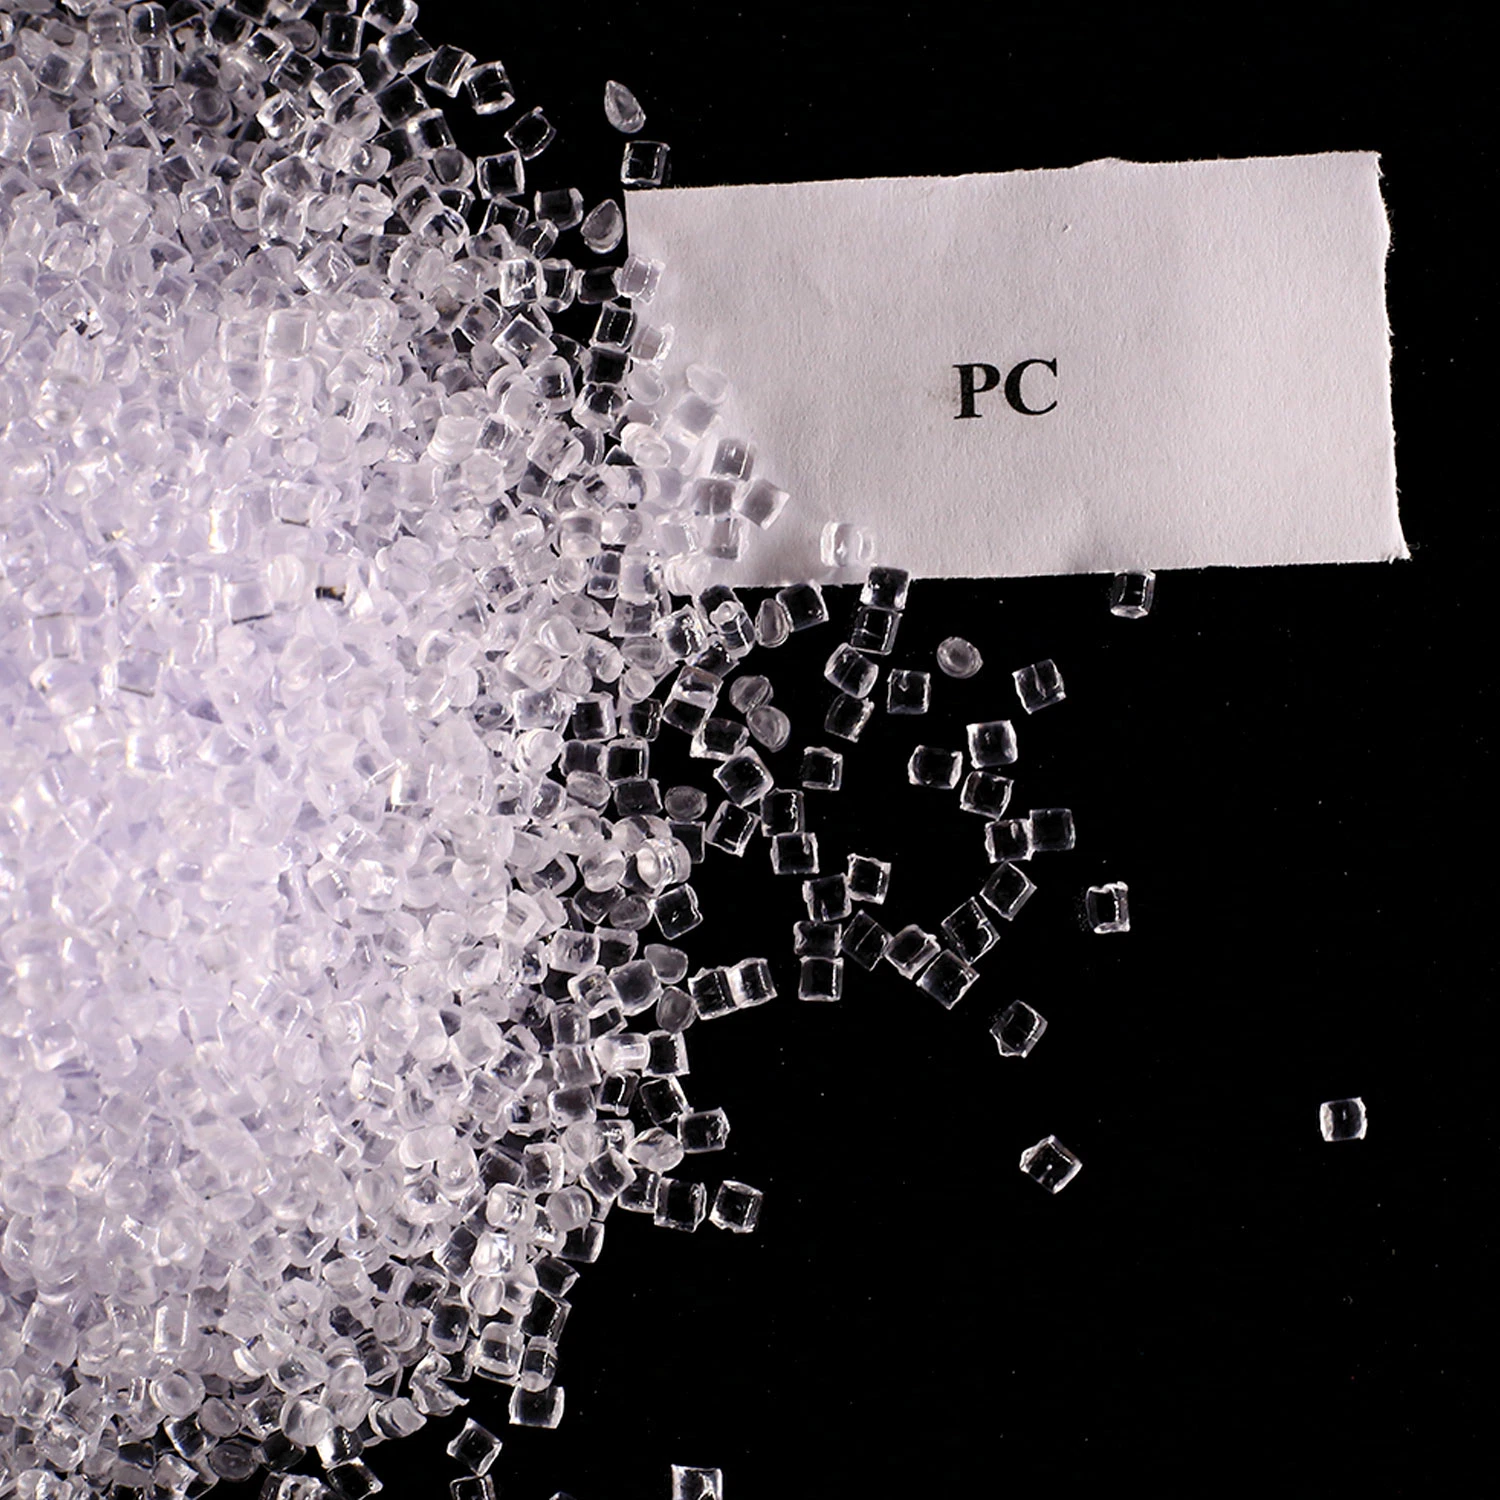 مادة خام بلاستيكية للكمبيوتر الشخصي/ حبيبات شفافة من البولي كربونات/كمبيوتر شخصي